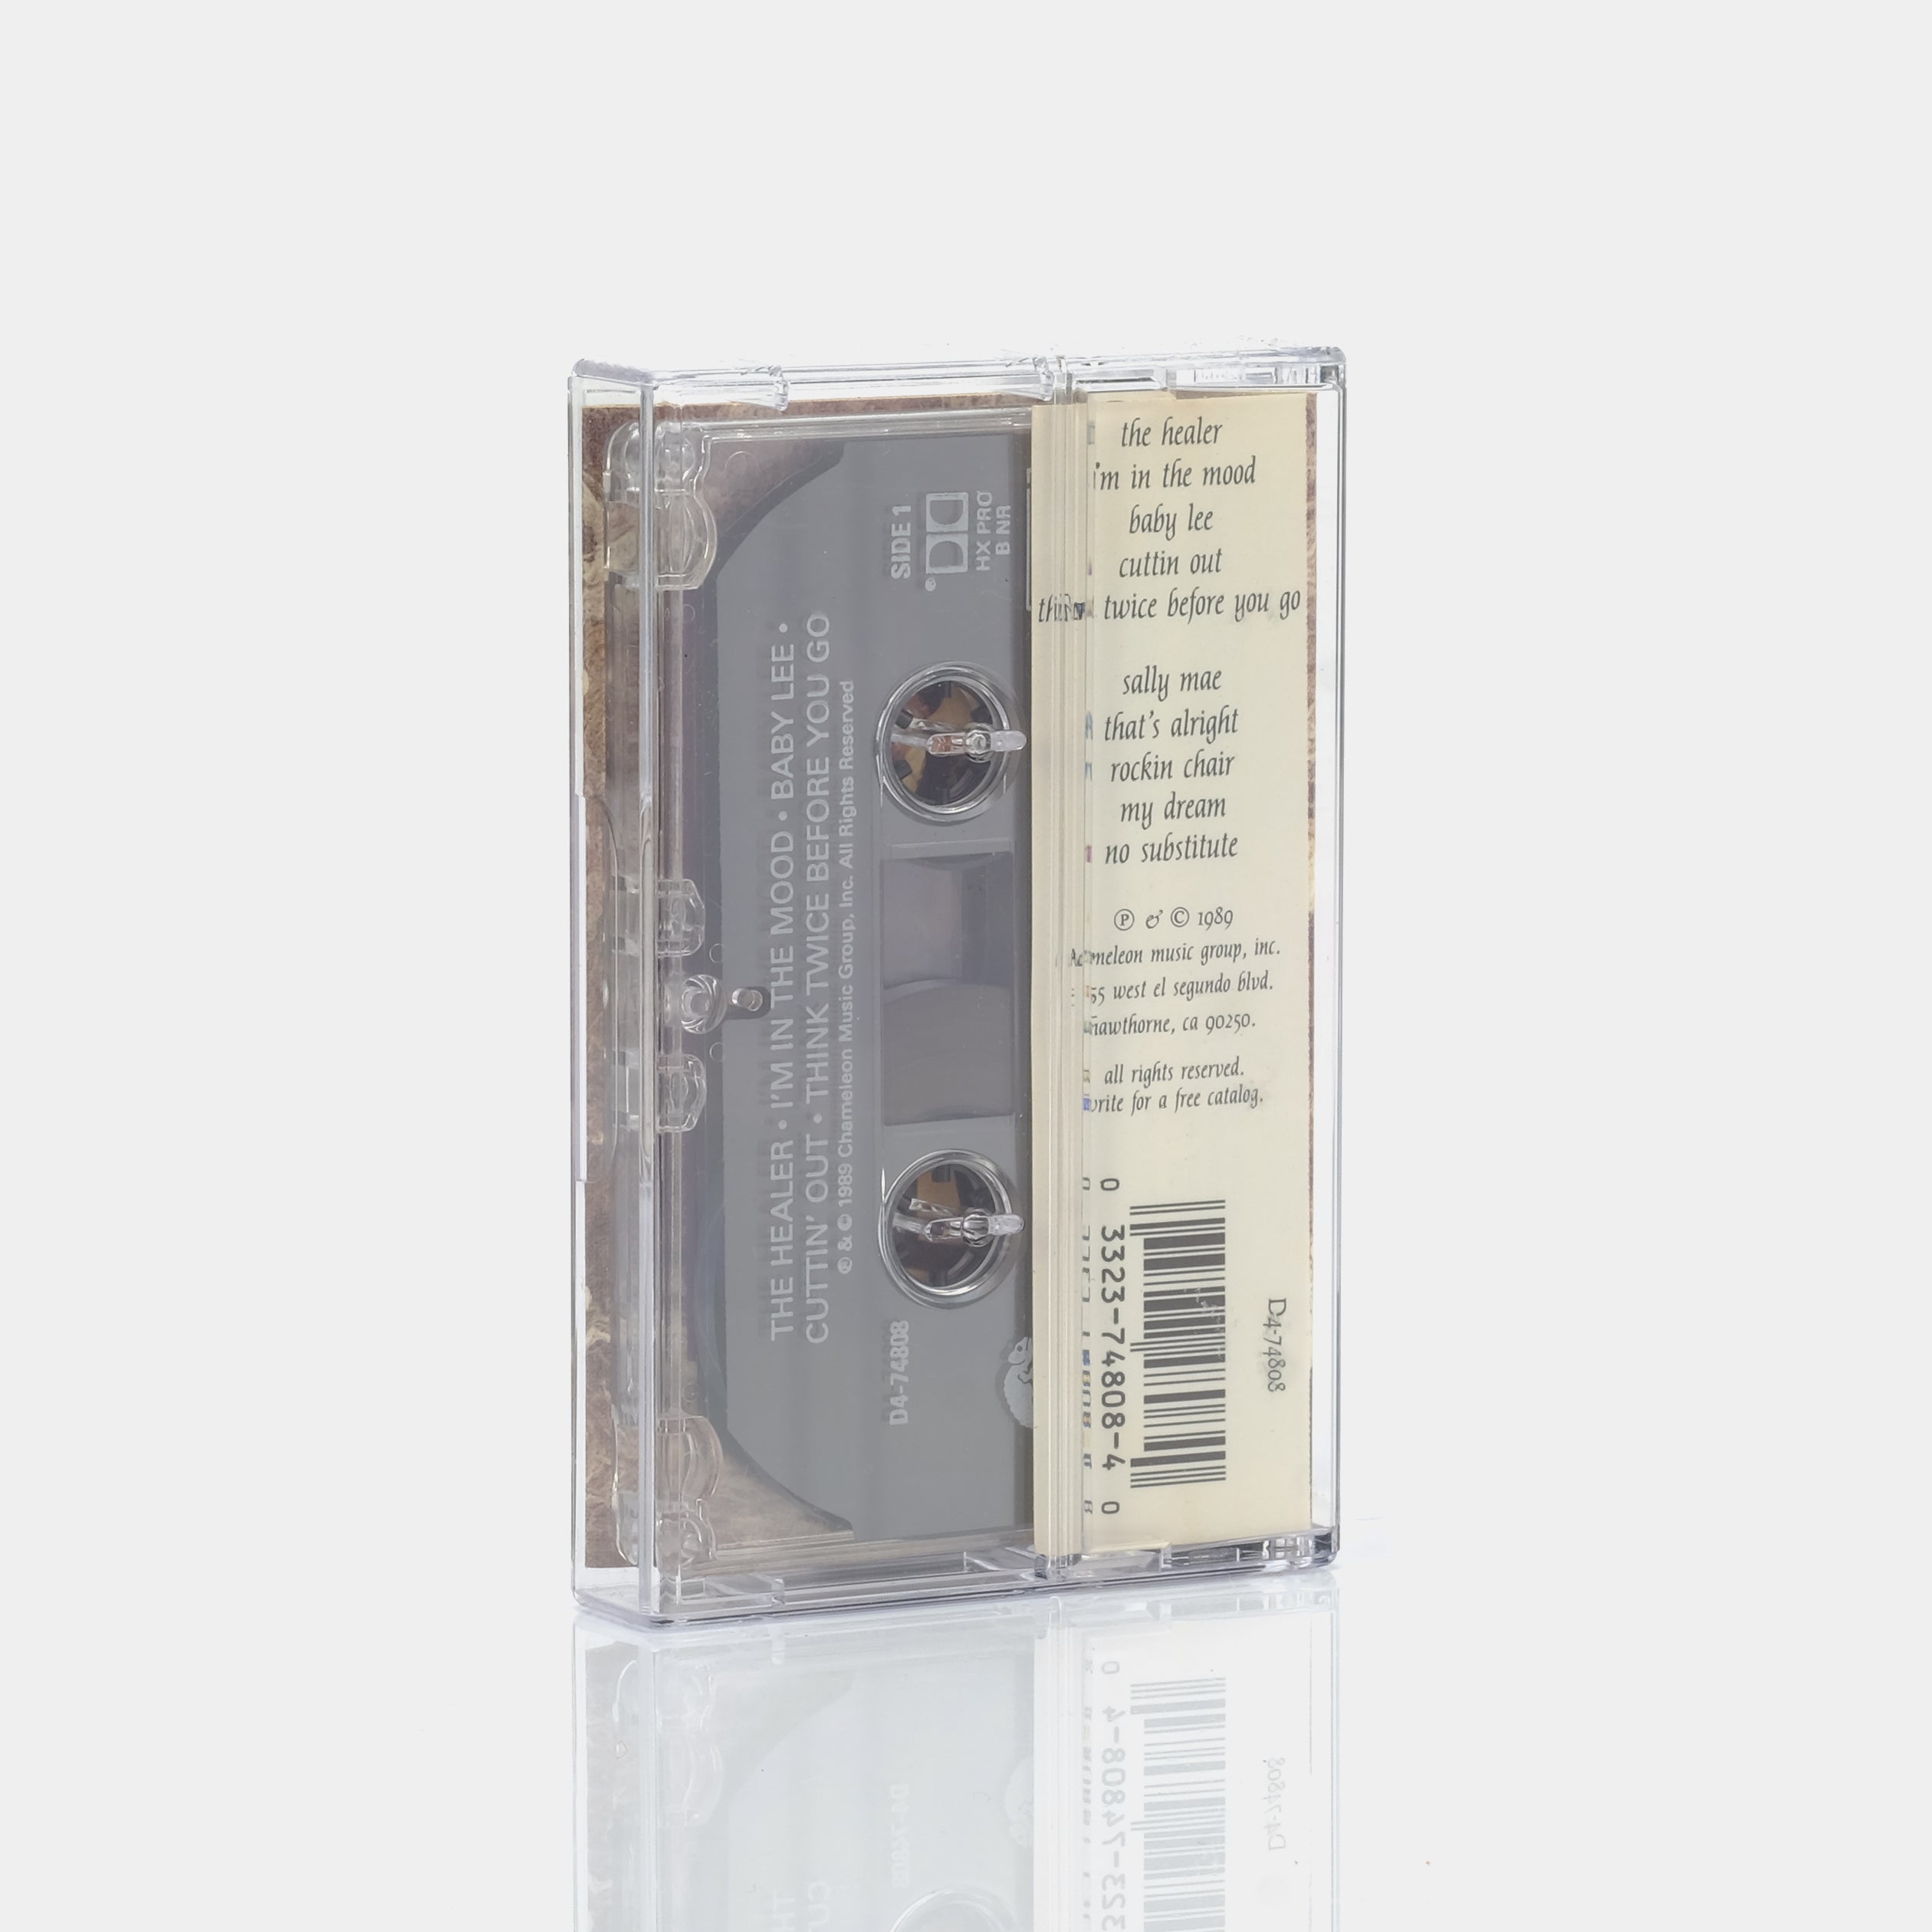 John Lee Hooker - The Healer Cassette Tape